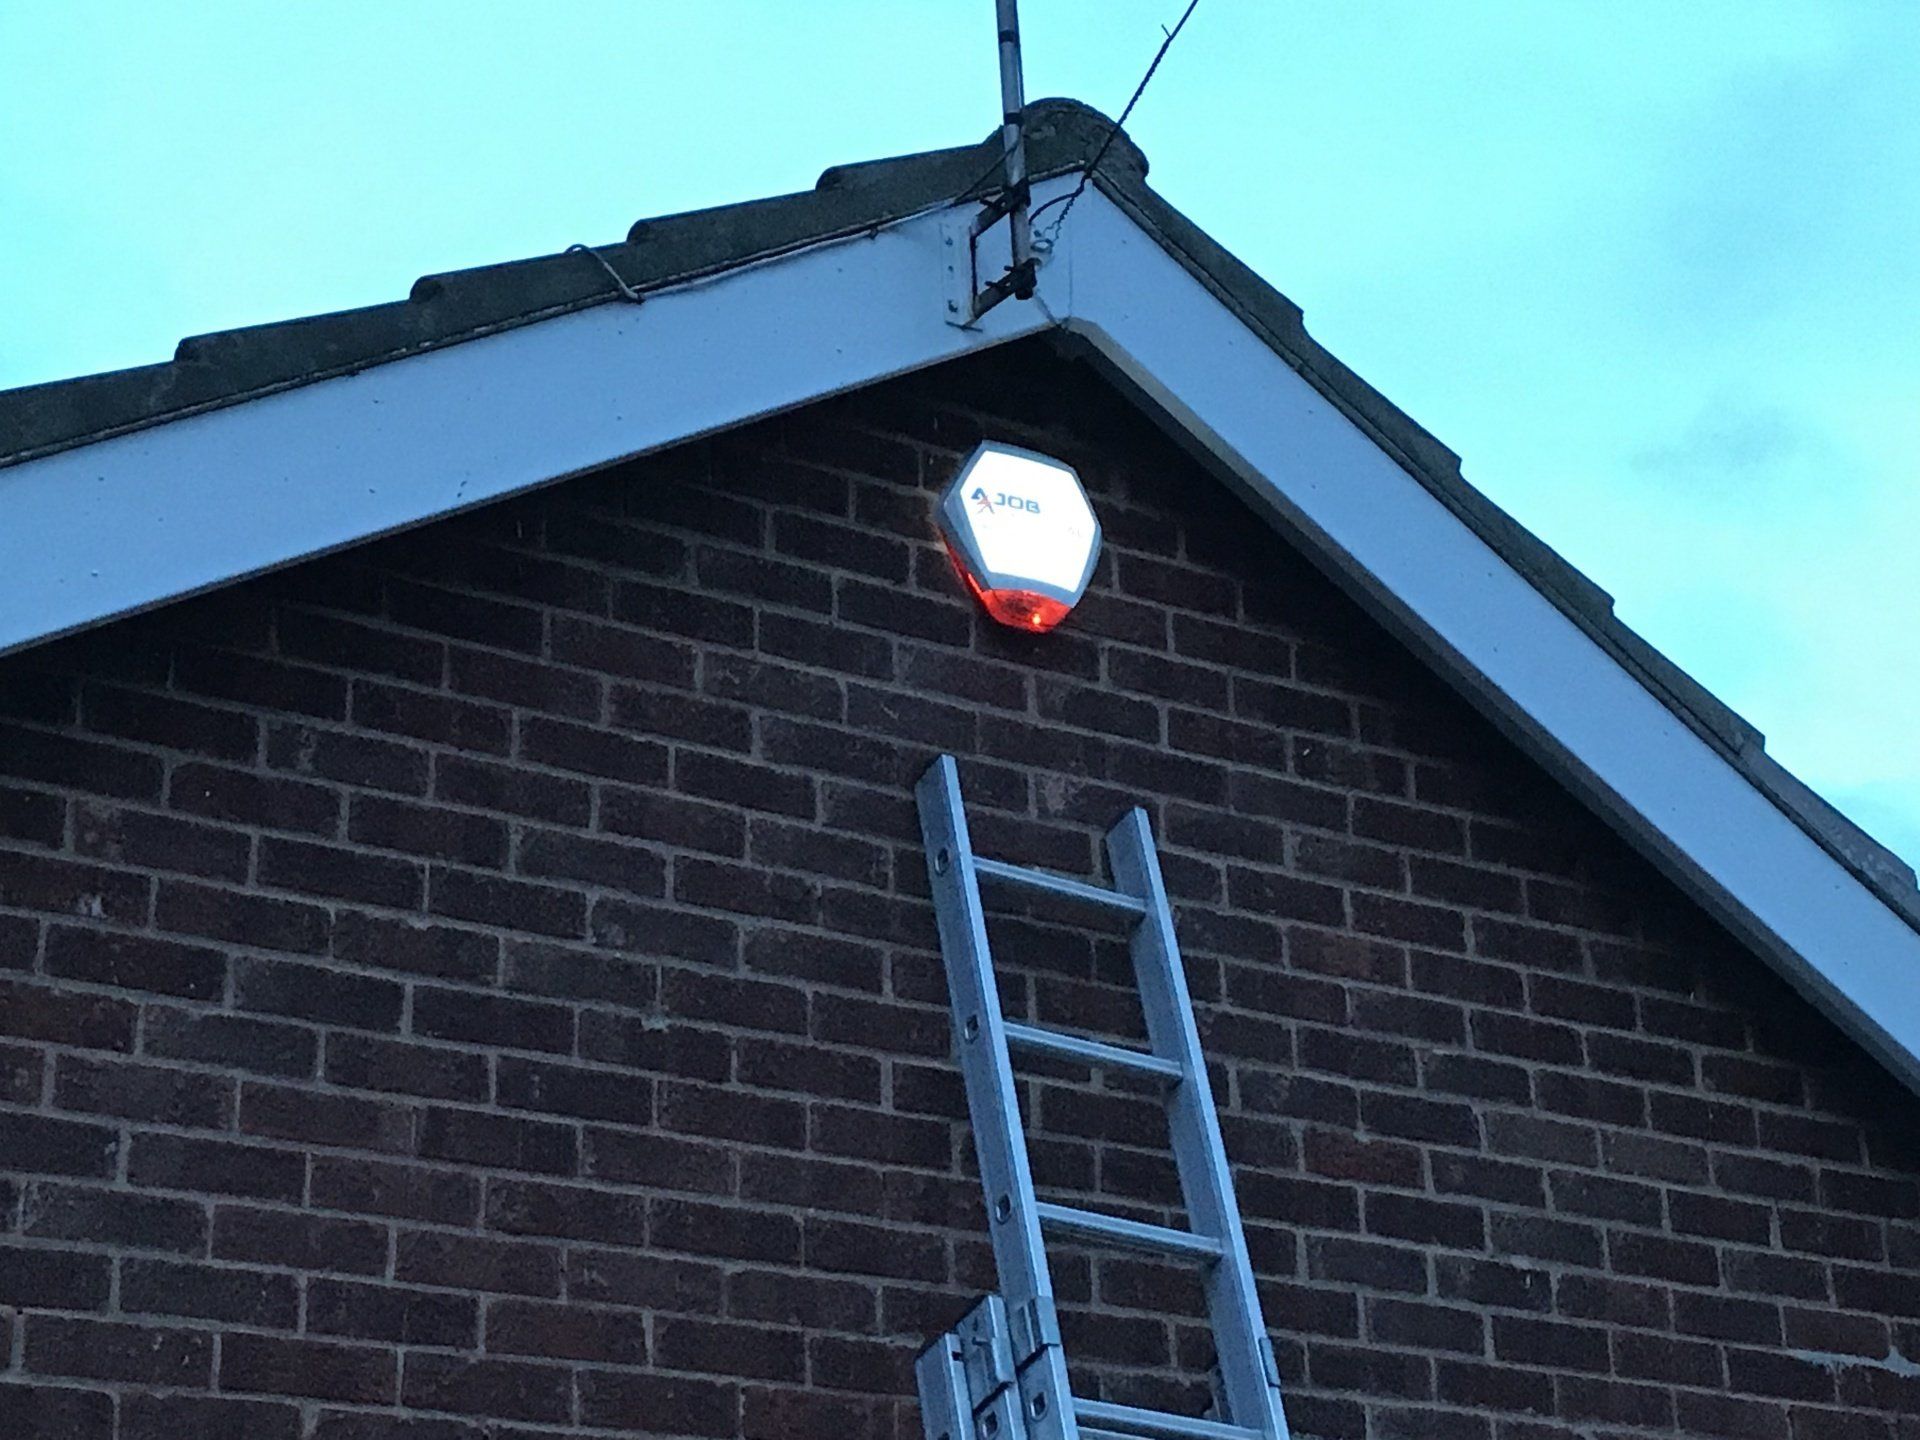 Photo of an intruder alarm external siren